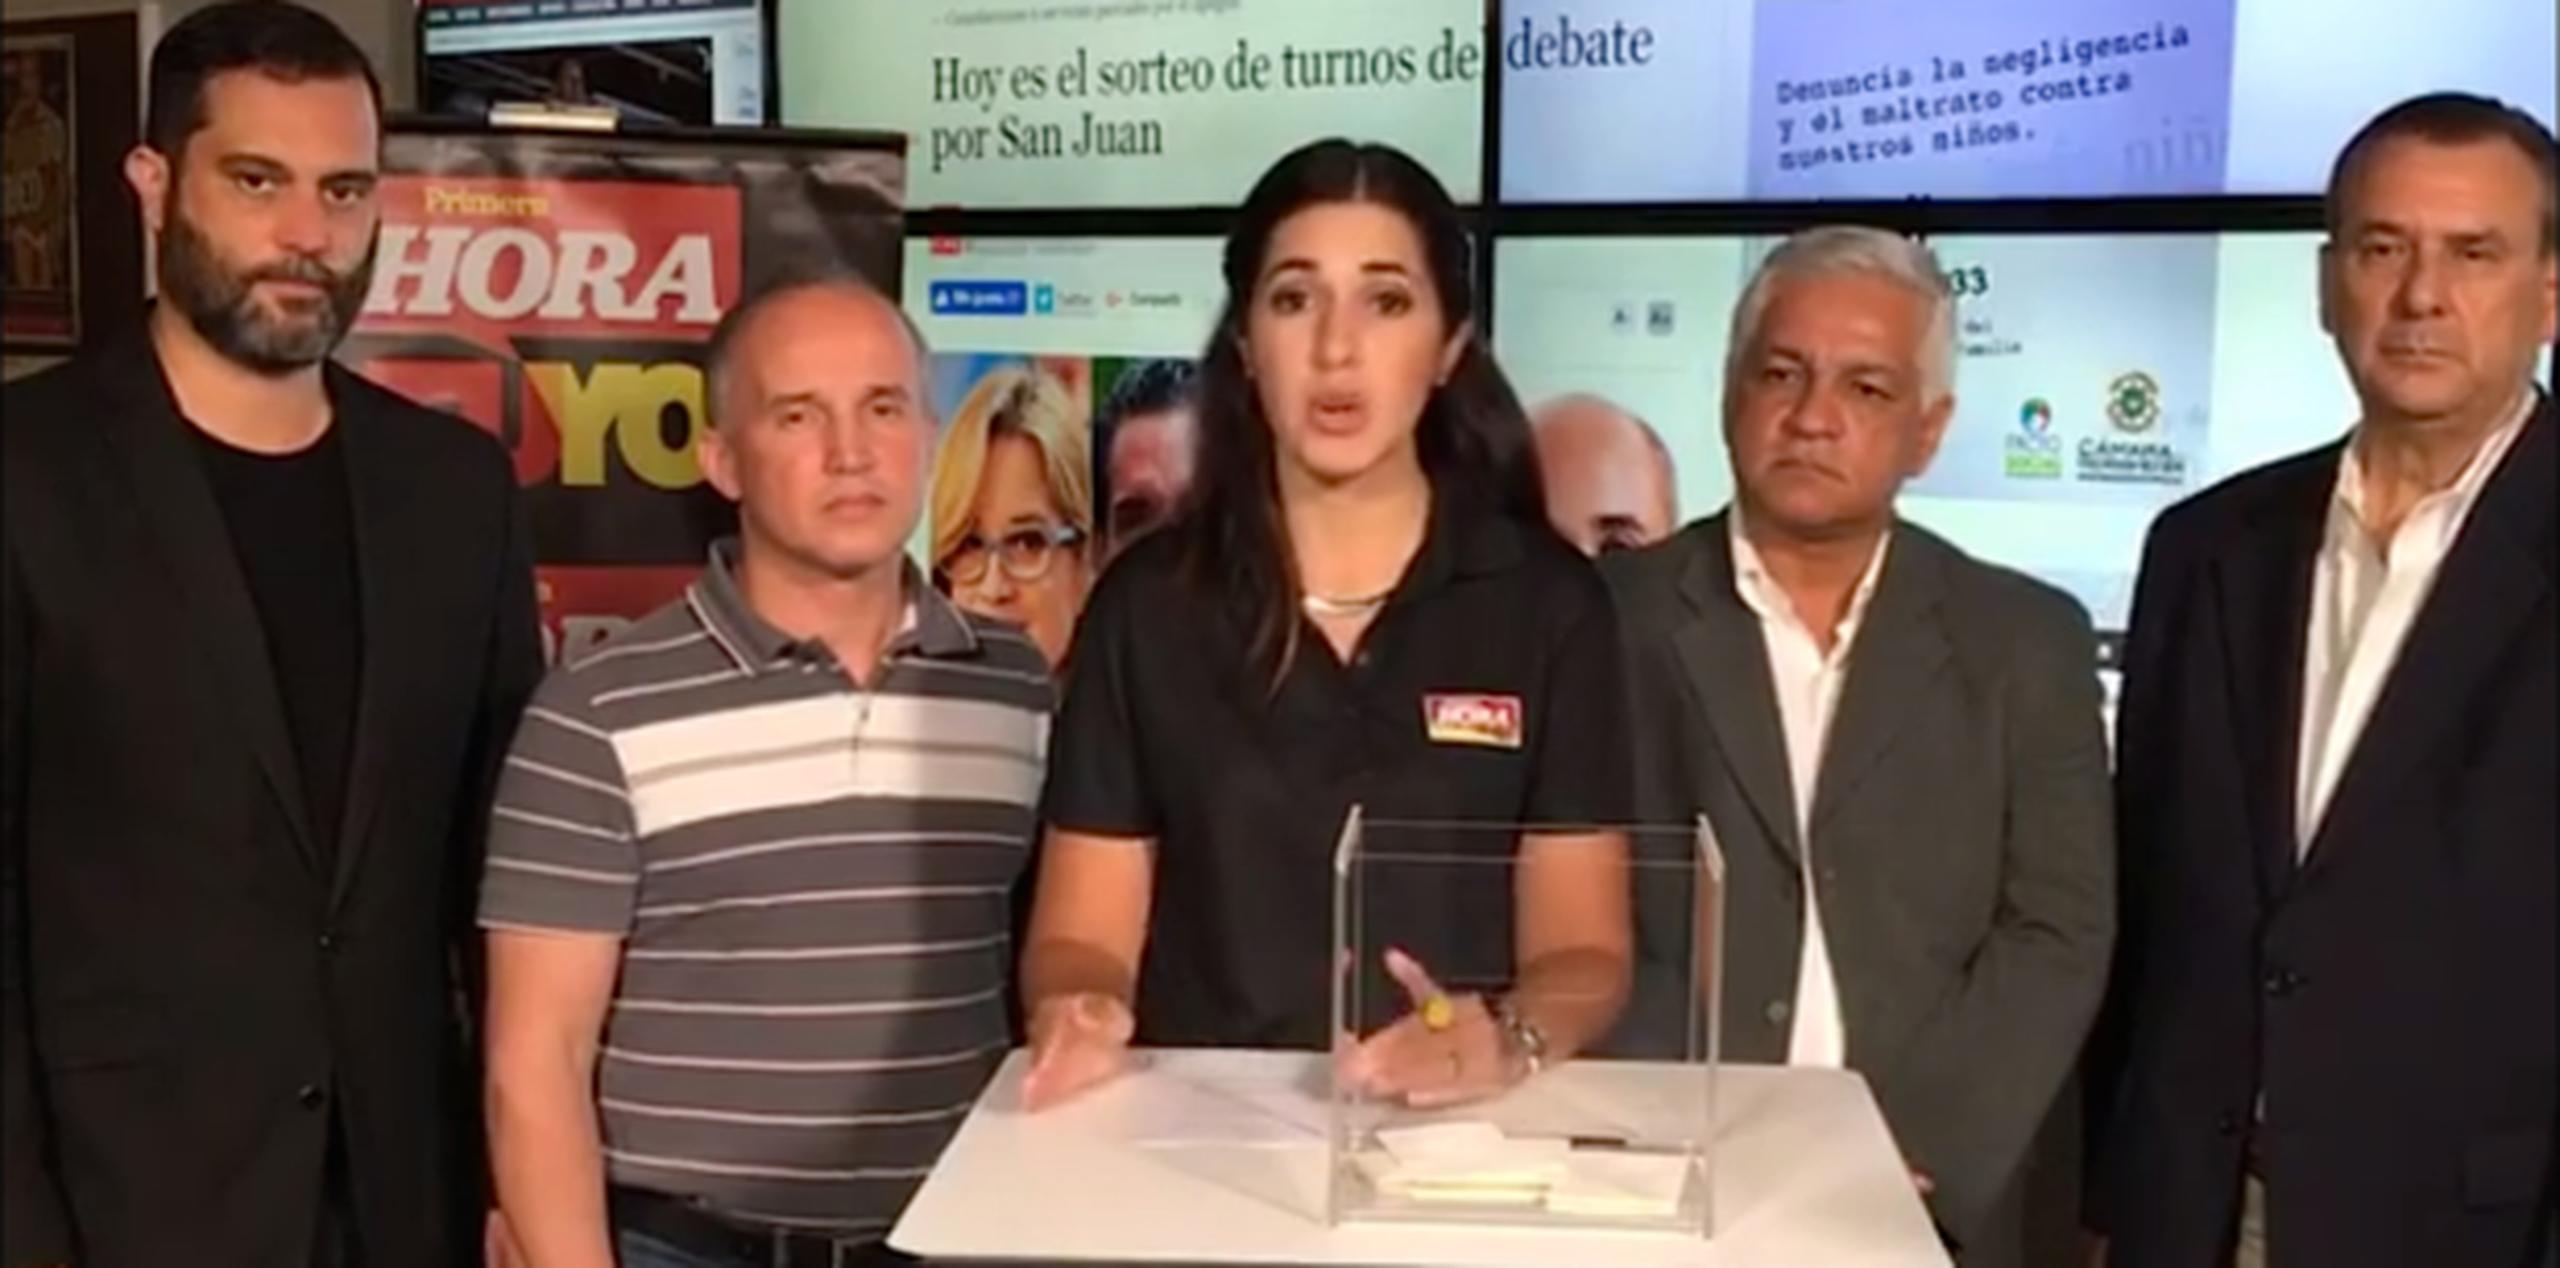 Los representantes de los cuatro candidatos para la alcaldía de San Juan presenciaron anoche el sorteo efectuado en las instalaciones de Primera Hora. (Captura)